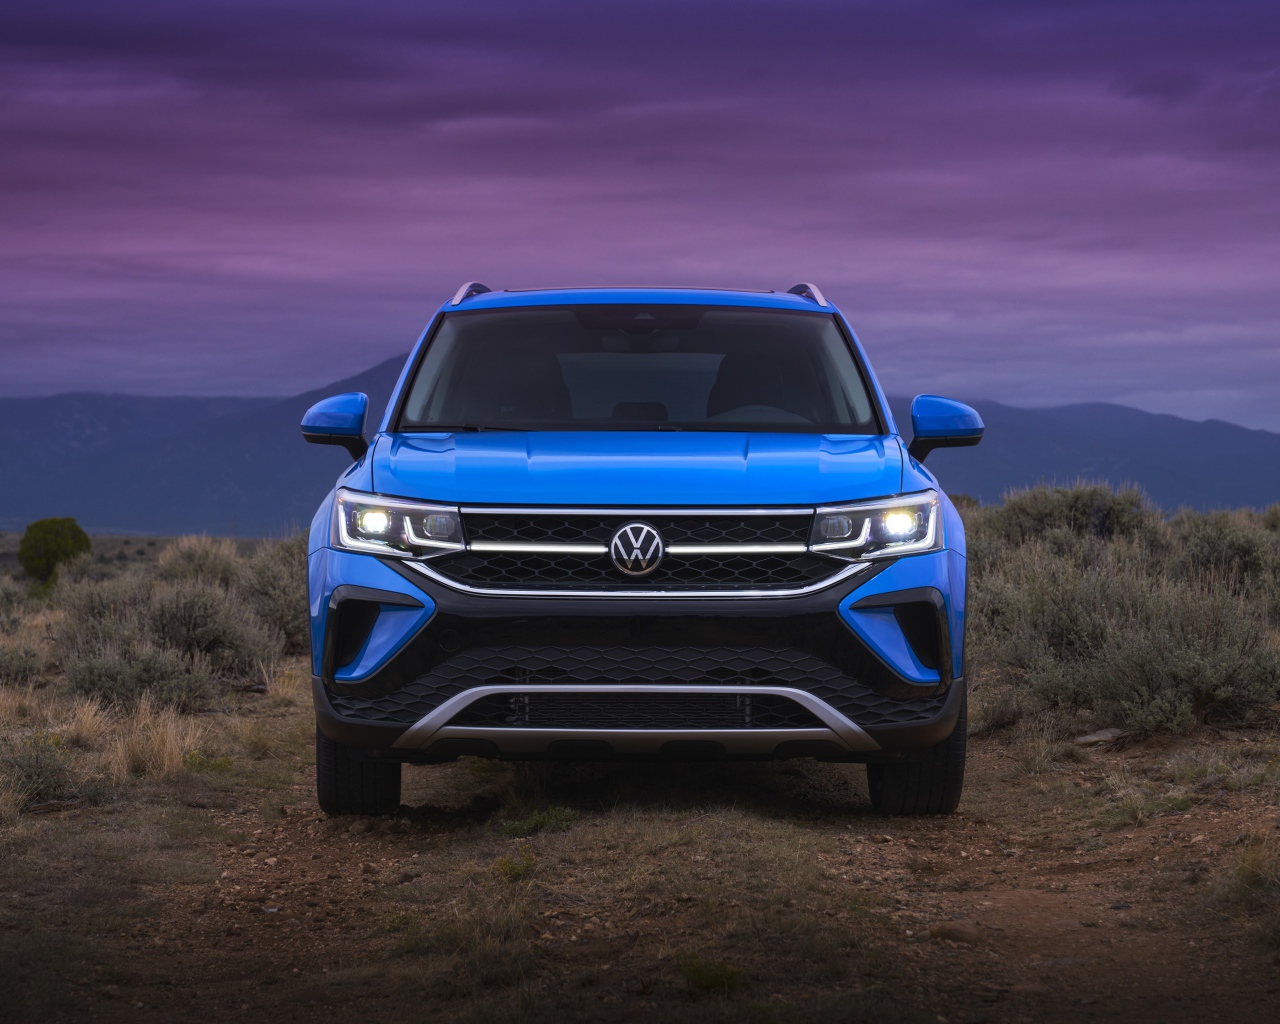 Голубой автомобиль  Volkswagen Taos, 2021 года вид спереди